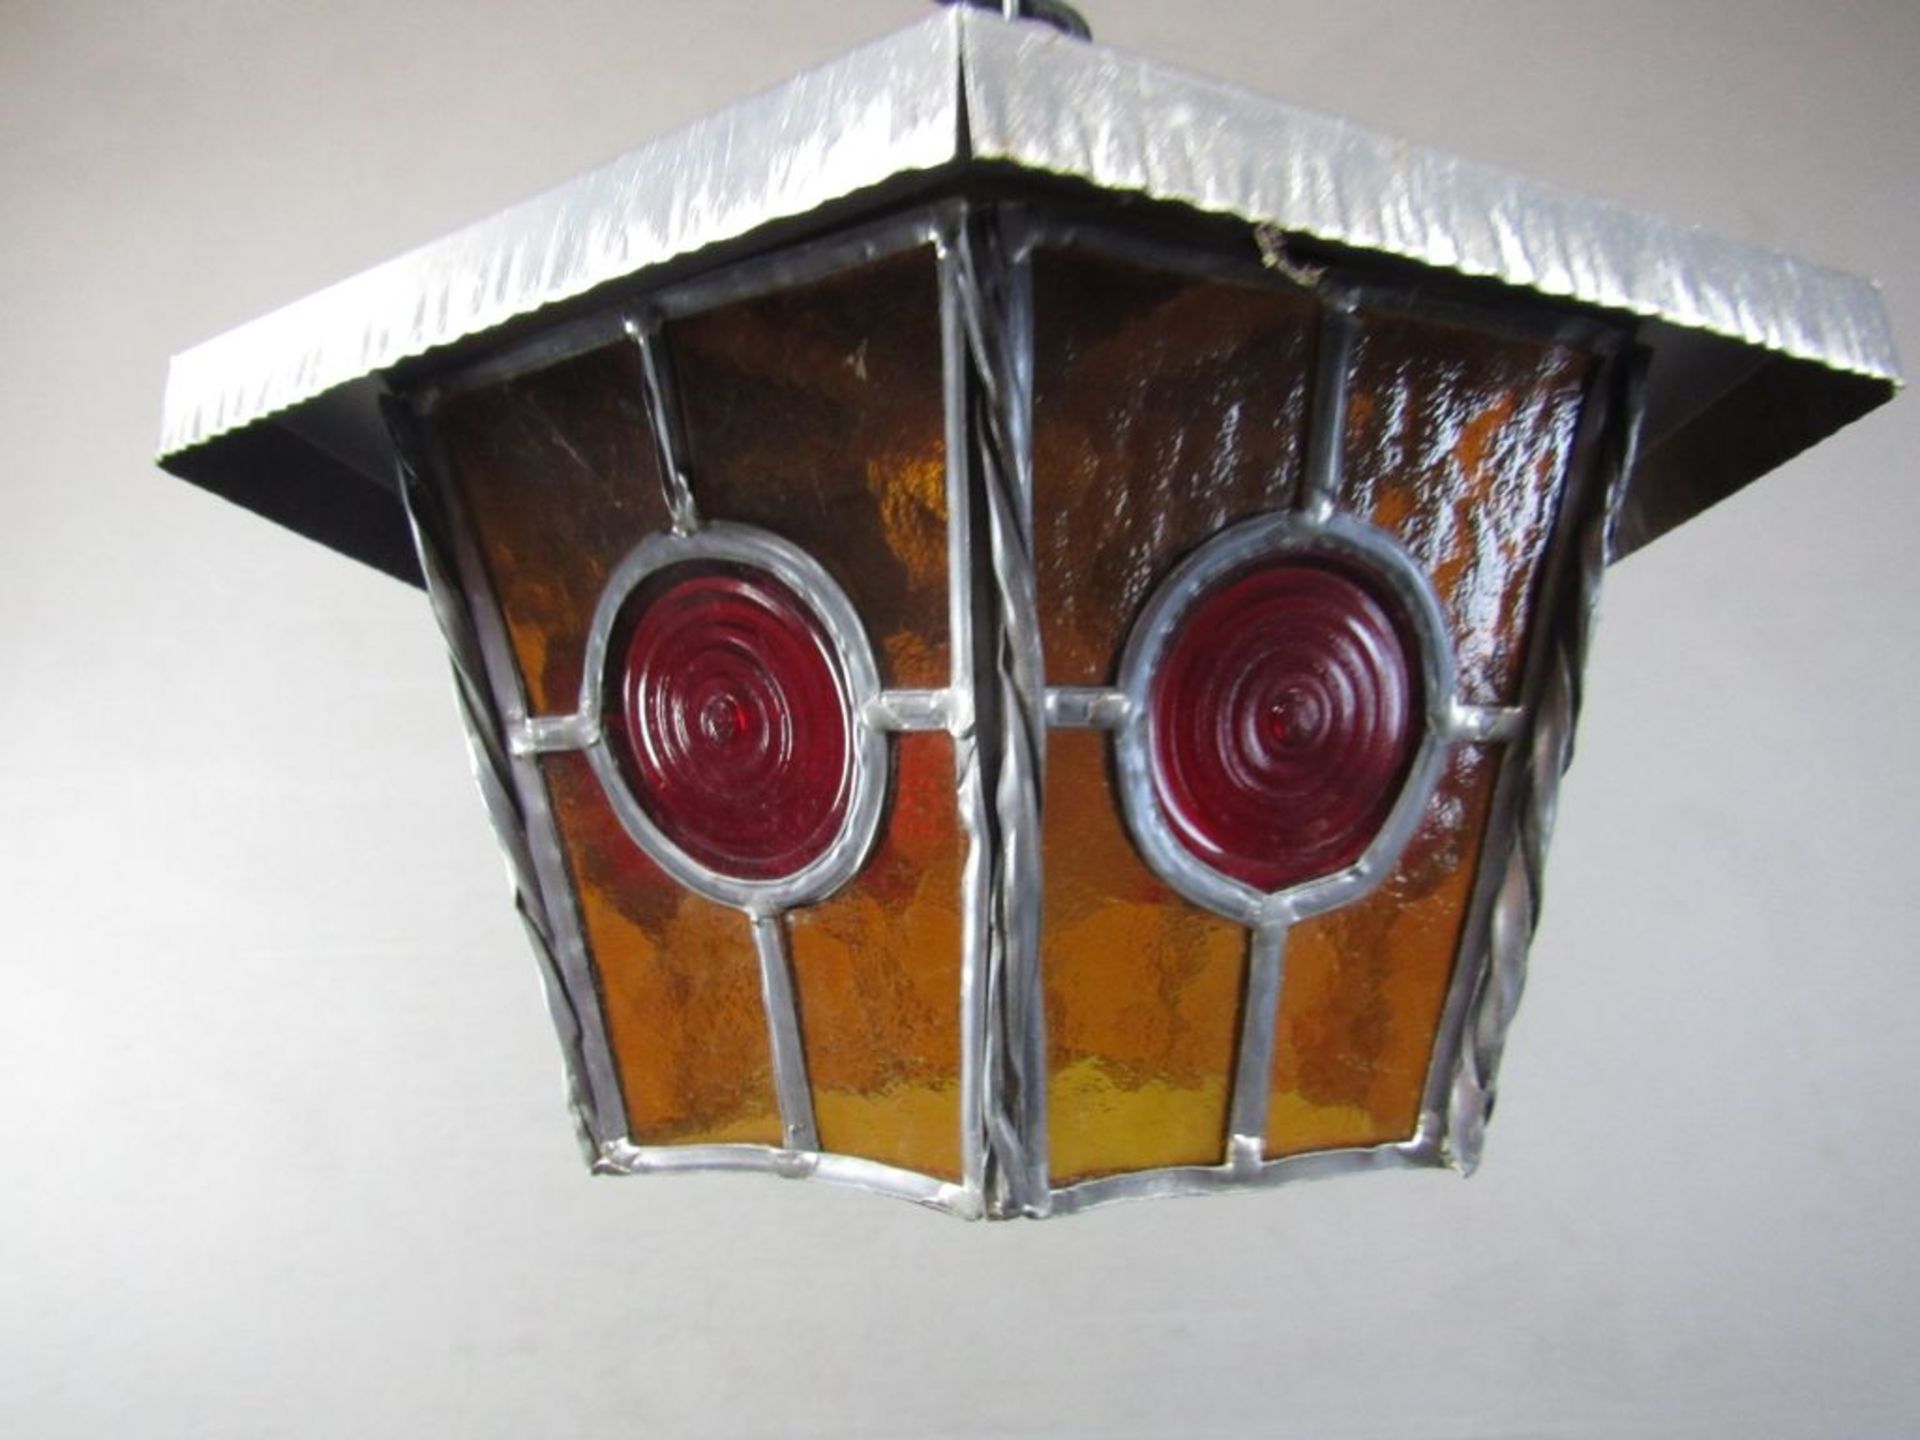 Schöne Deckenlampe in Jugendstilmanier mit Bleiverglasung ca.33cm Durchmesser - Image 2 of 4